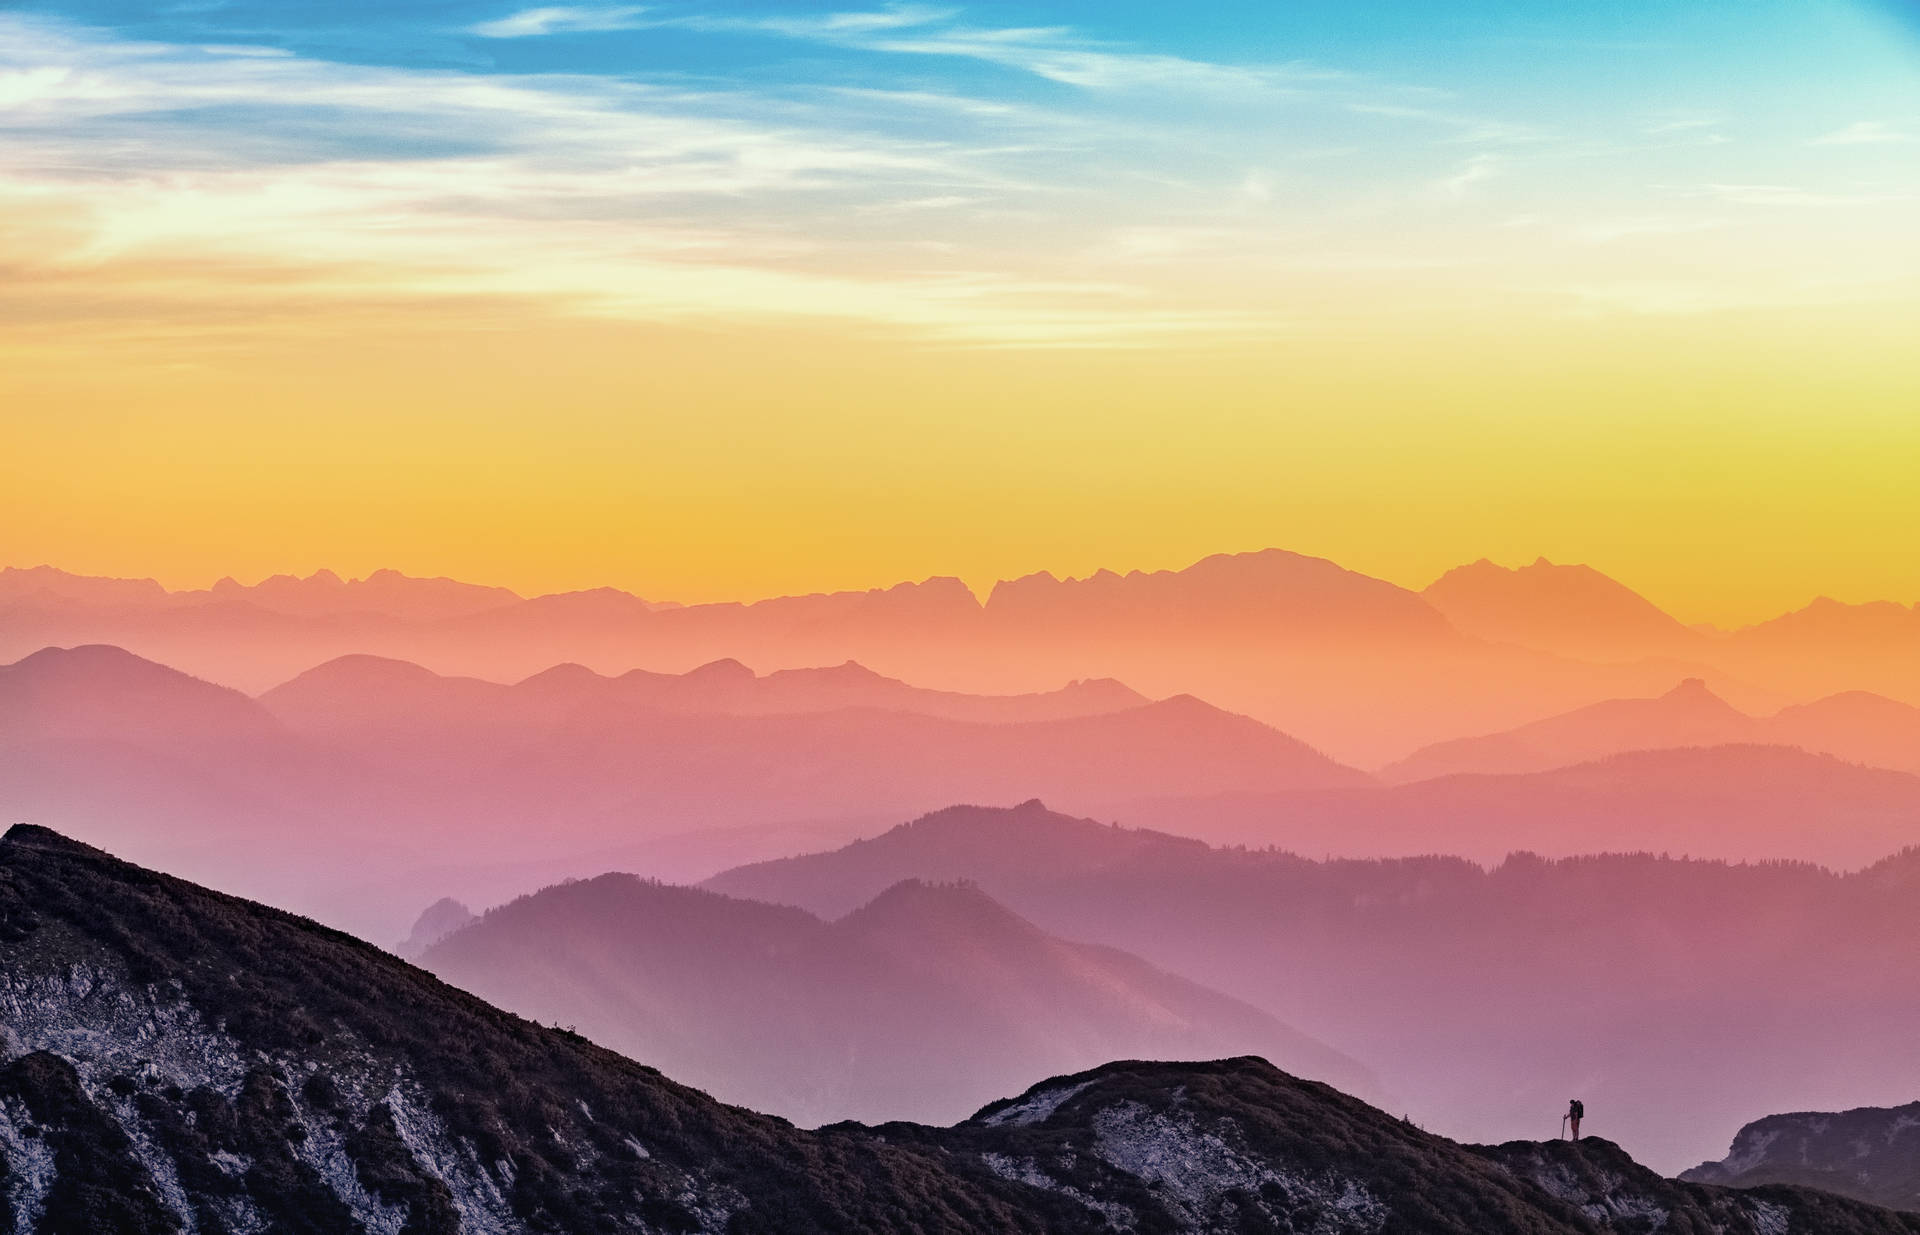 HD Landscape Desktop Mountain Range Silhouette Wallpaper